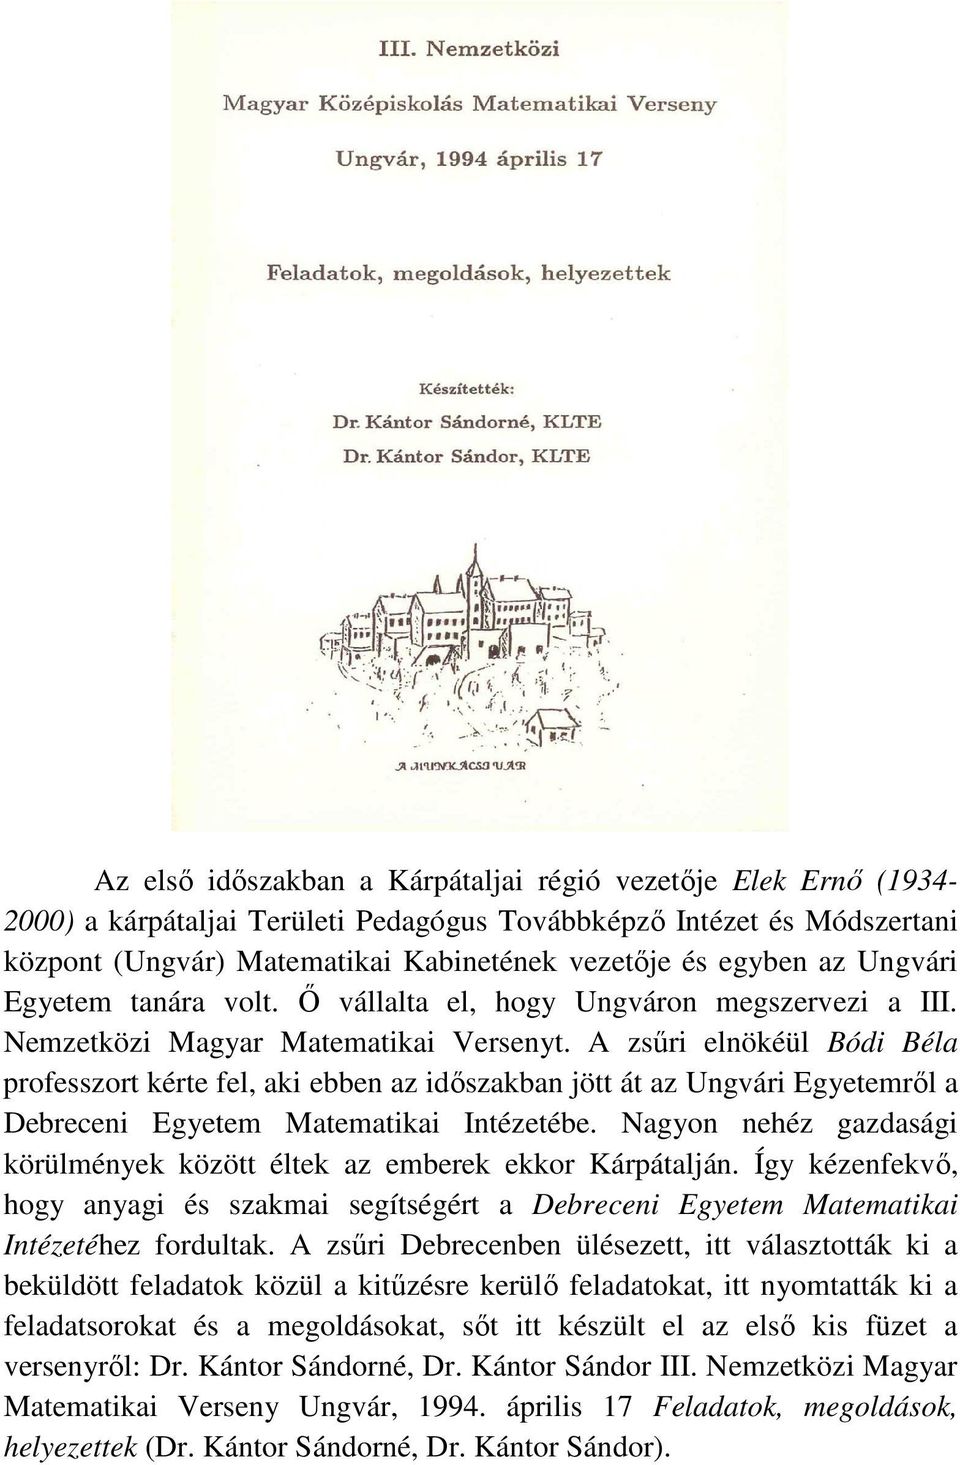 A zsűri elnökéül Bódi Béla professzort kérte fel, aki ebben az időszakban jött át az Ungvári Egyetemről a Debreceni Egyetem Matematikai Intézetébe.